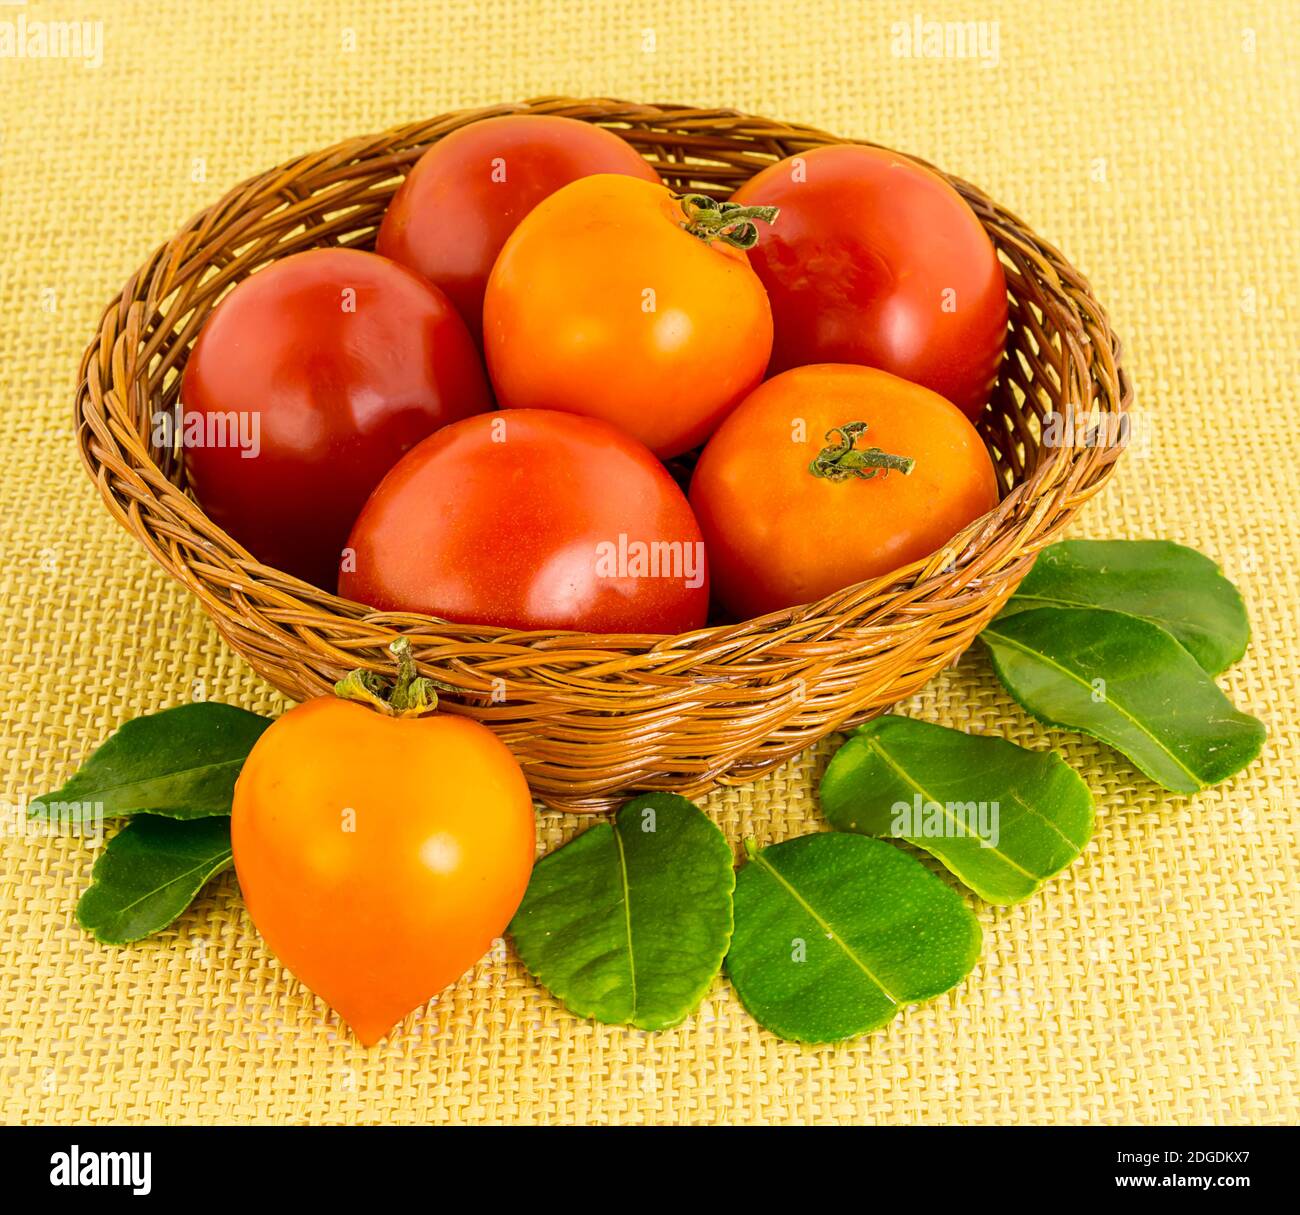 Große rote Tomate in einem Korbbraunkorb mit einem Herzförmige Frucht mit grünen Blättern aus der Nähe Stockfoto